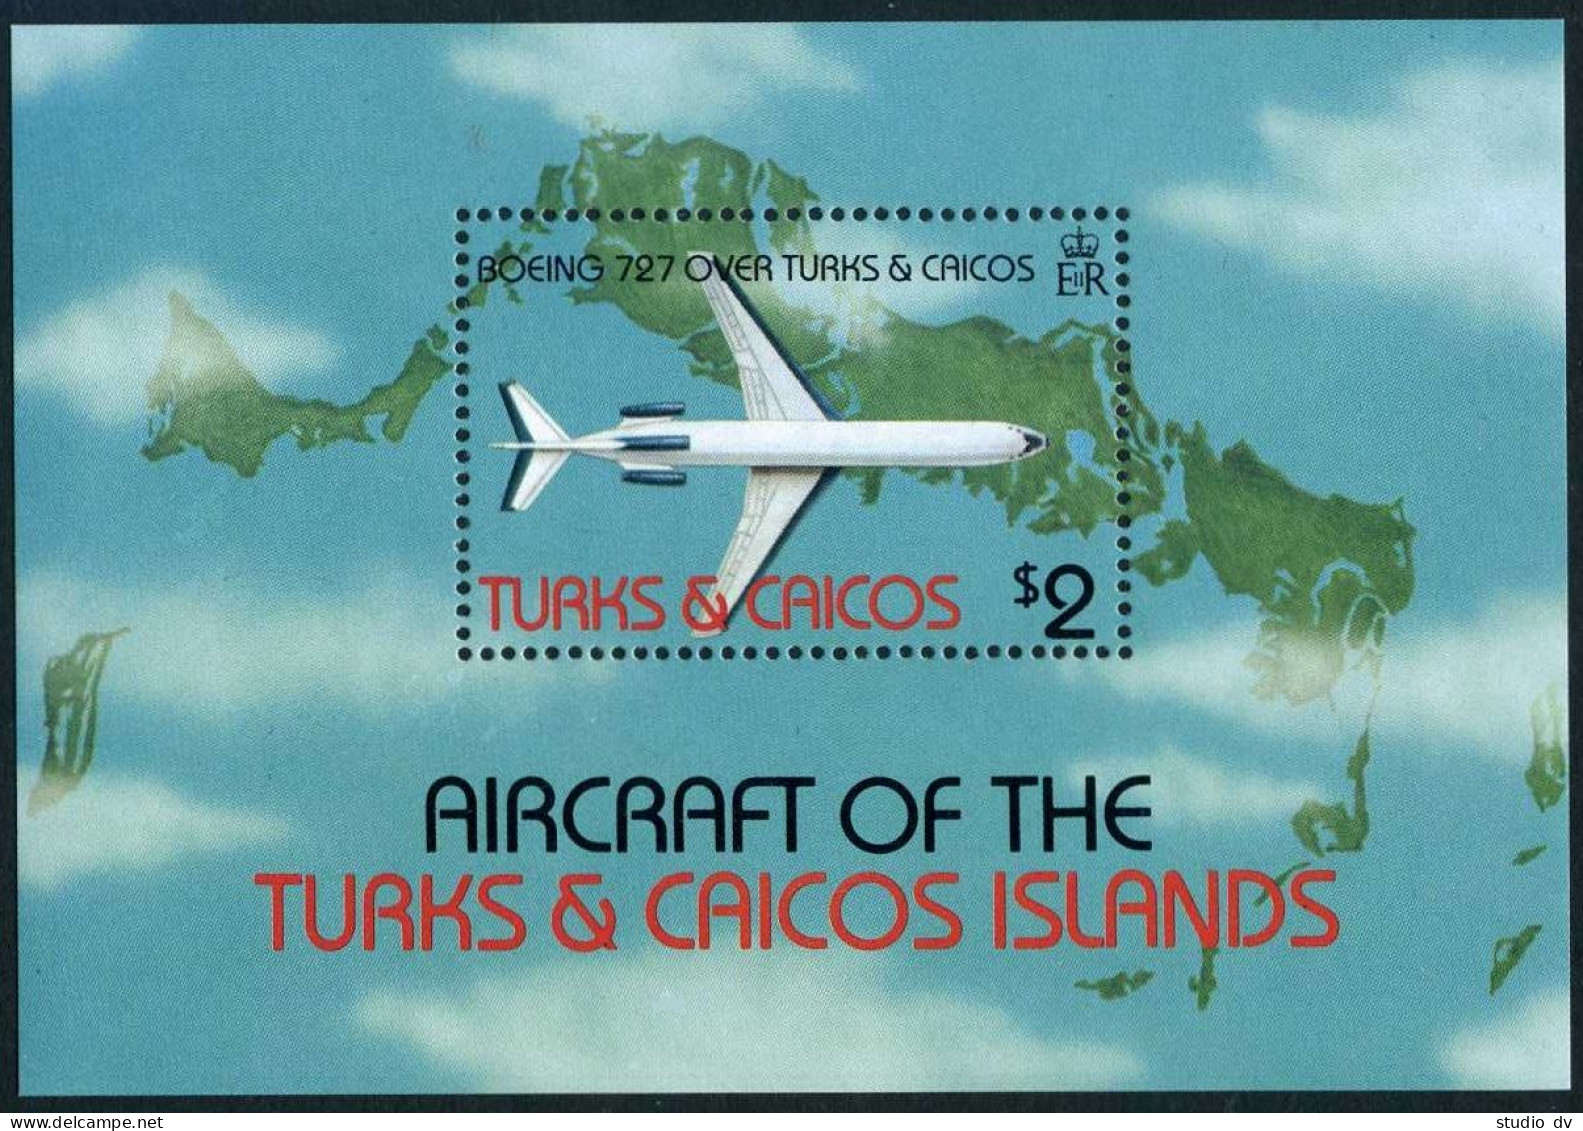 Turks & Caicos 539, MNH. Michel 609 Bl.40. Aircraft 1982. Boeing 727-200. - Turks & Caicos